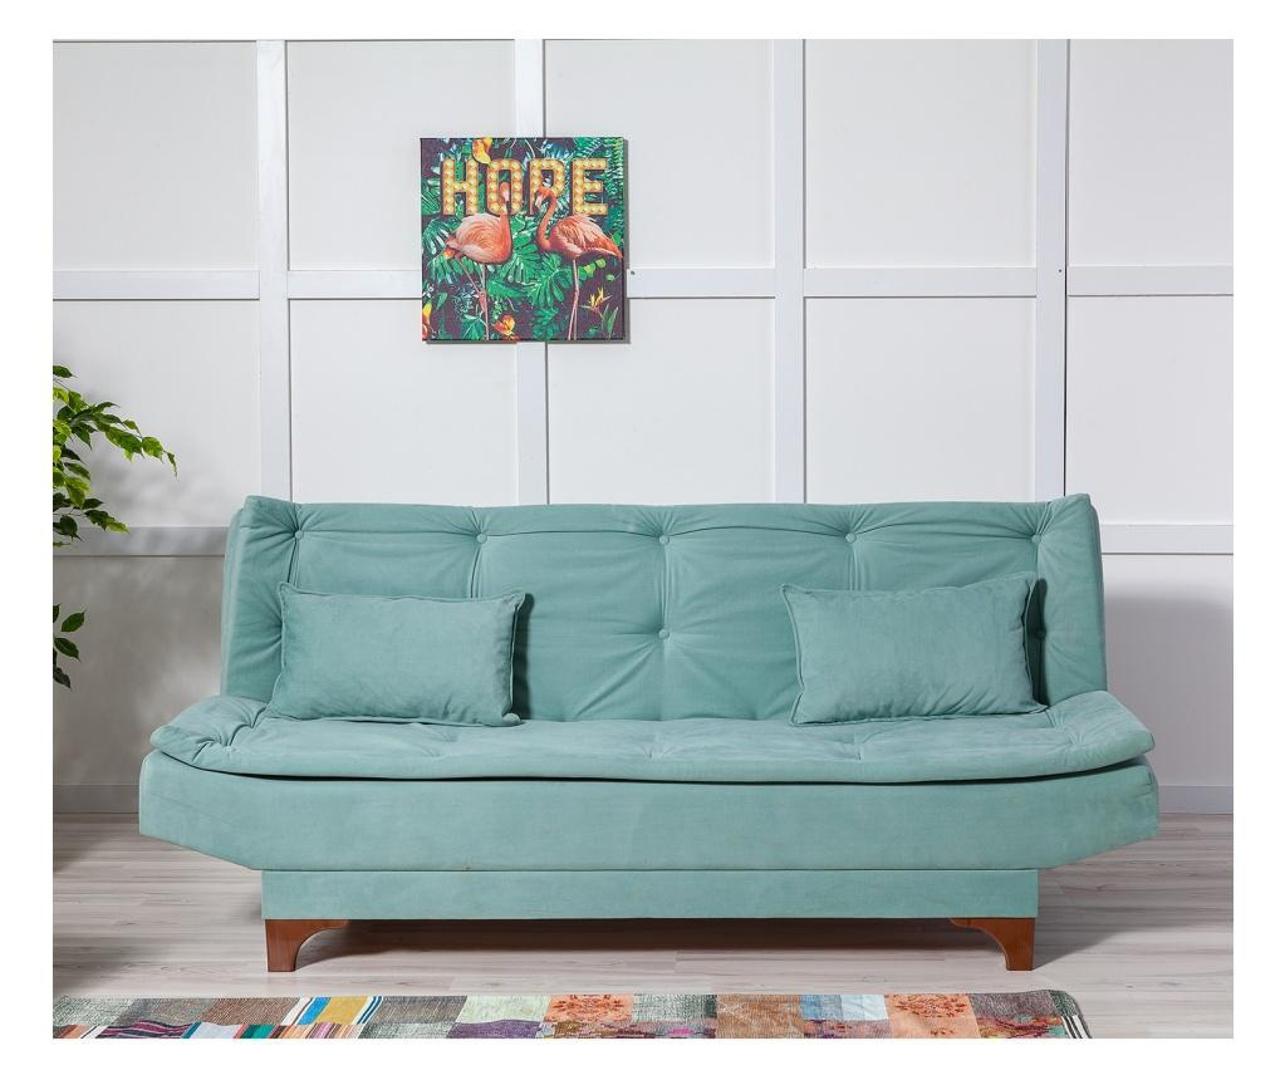 Atraktivna boja glavni je adut ovog kauča koji na sniženju košta 2408 kuna